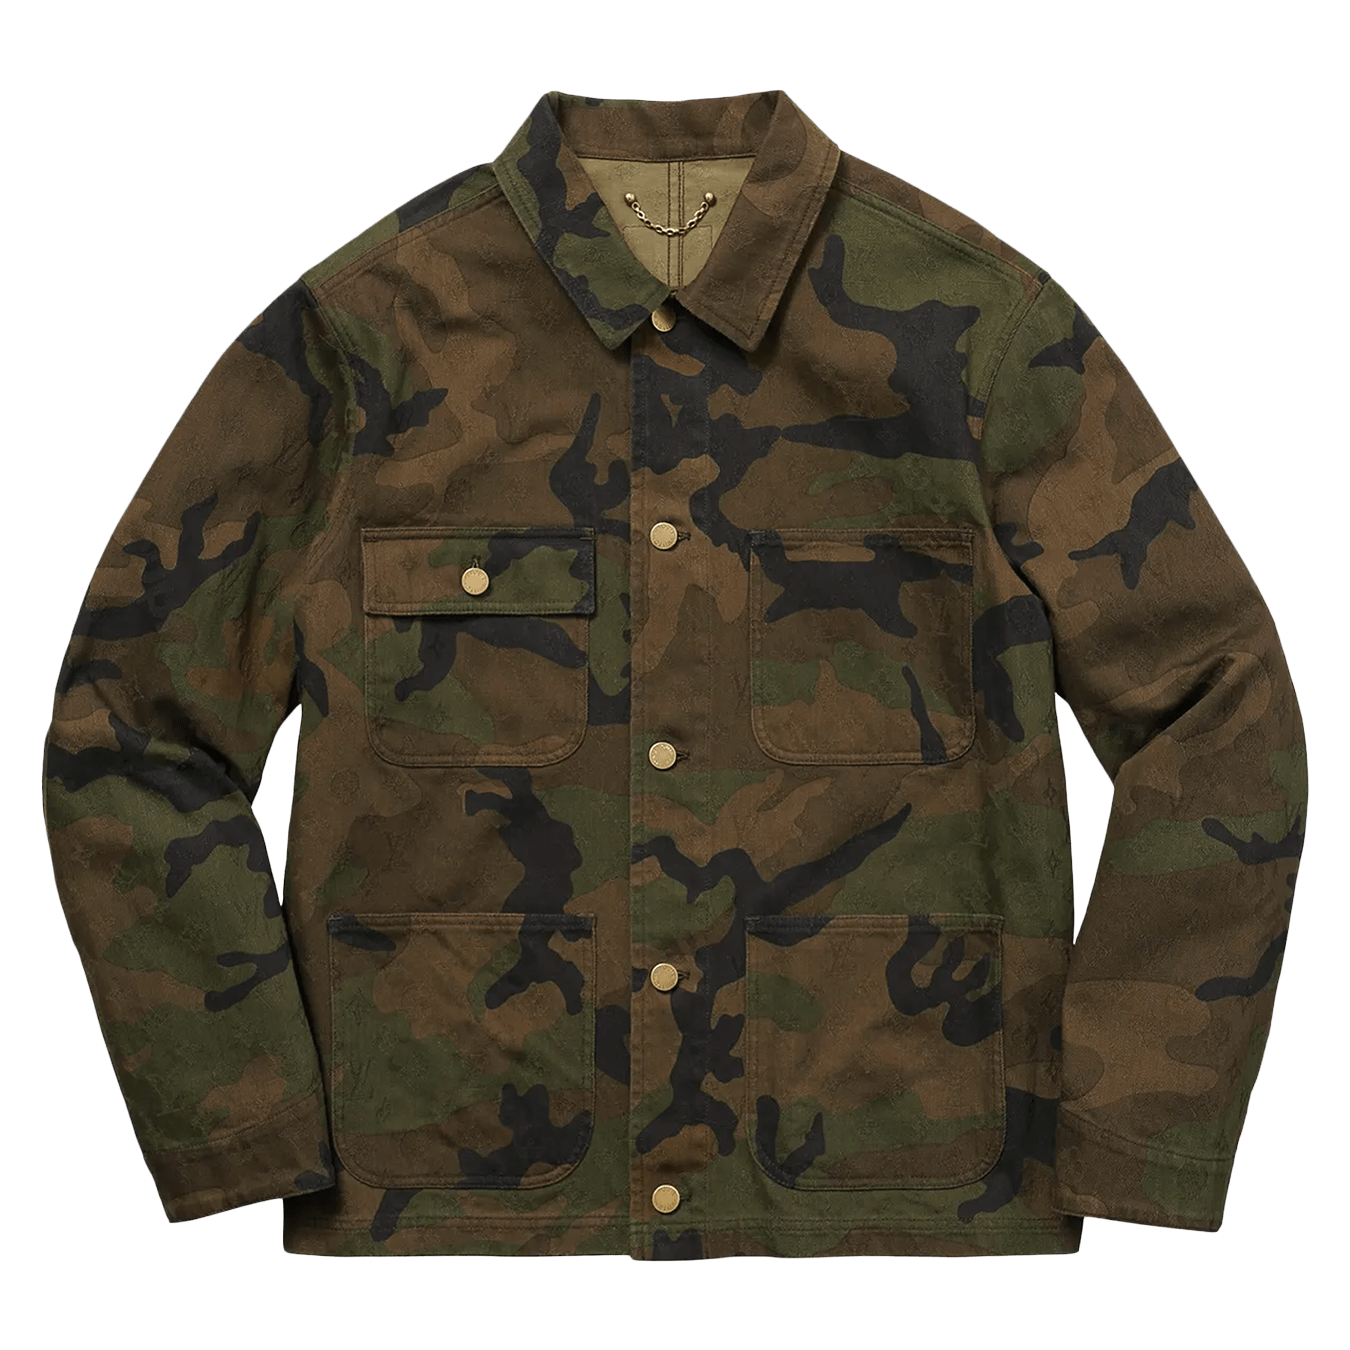 lv jacket price in nepal